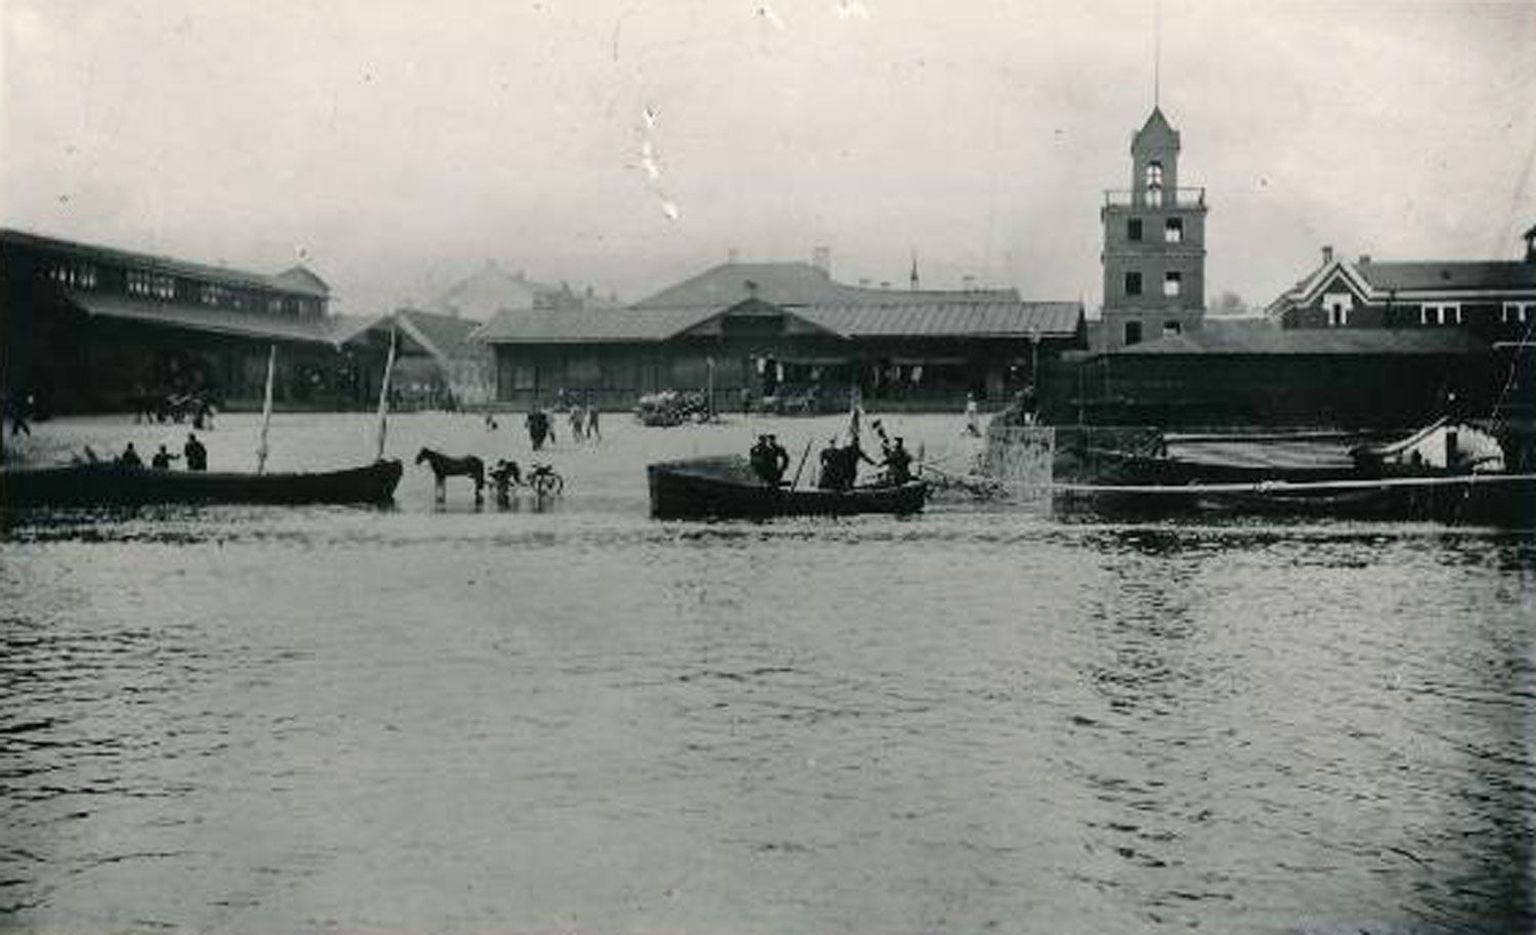 Fotole on jäädvustatud 1899. aasta üleujutuse aegne söögiturg. Vasakul paistaks praegu Tartu sammastega kaubamaja, parempoolses osas on vana pritsumaja torn, mille asemel on nüüdsel ajal park.